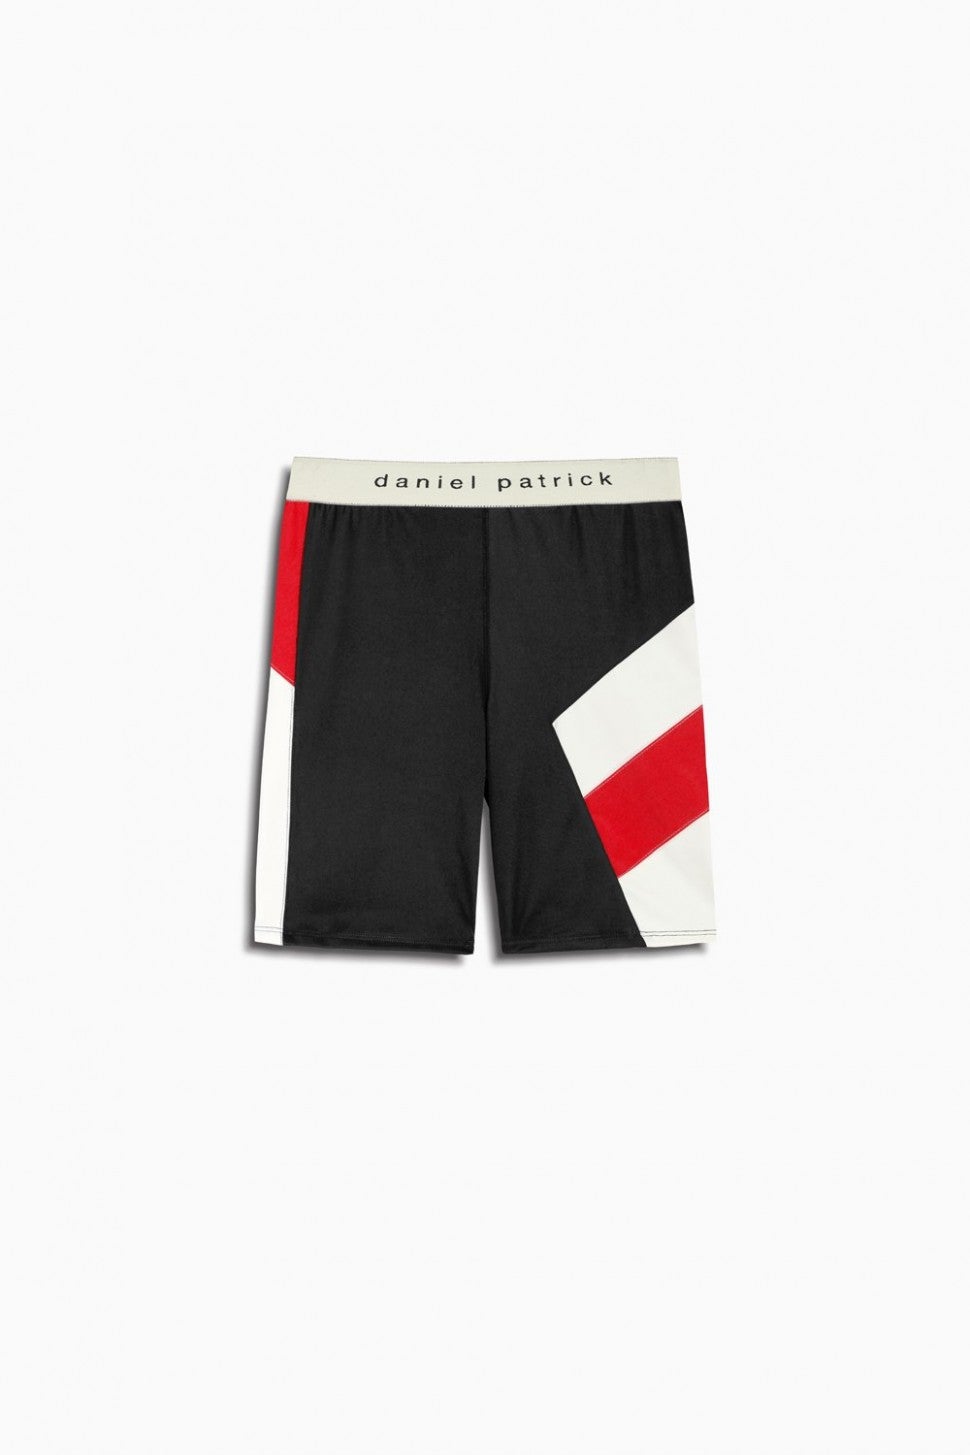 Daniel Patrick bike shorts